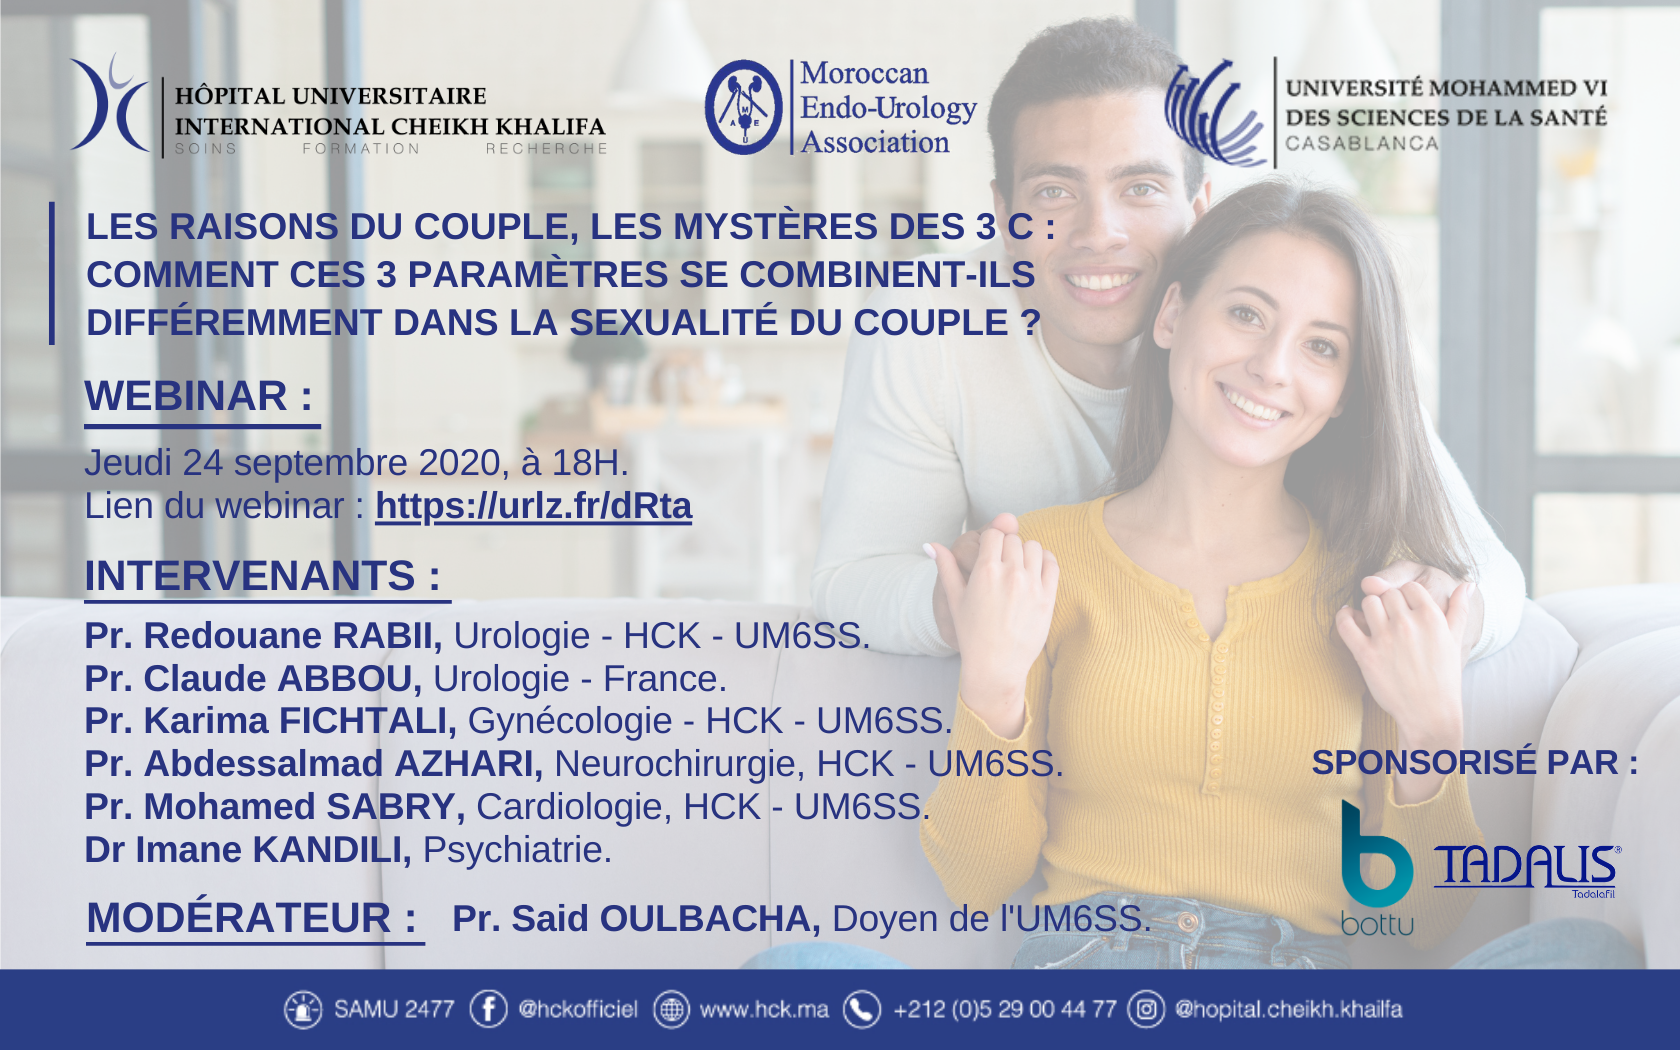 LES RAISONS DU COUPLE, LES MYSTERES DES 3 C : COMMENT CES 3 PARAMETRES SE COMBINENT-ILS DIFFEREMMENT DANS LA SEXUALITE DU COUPLE ?